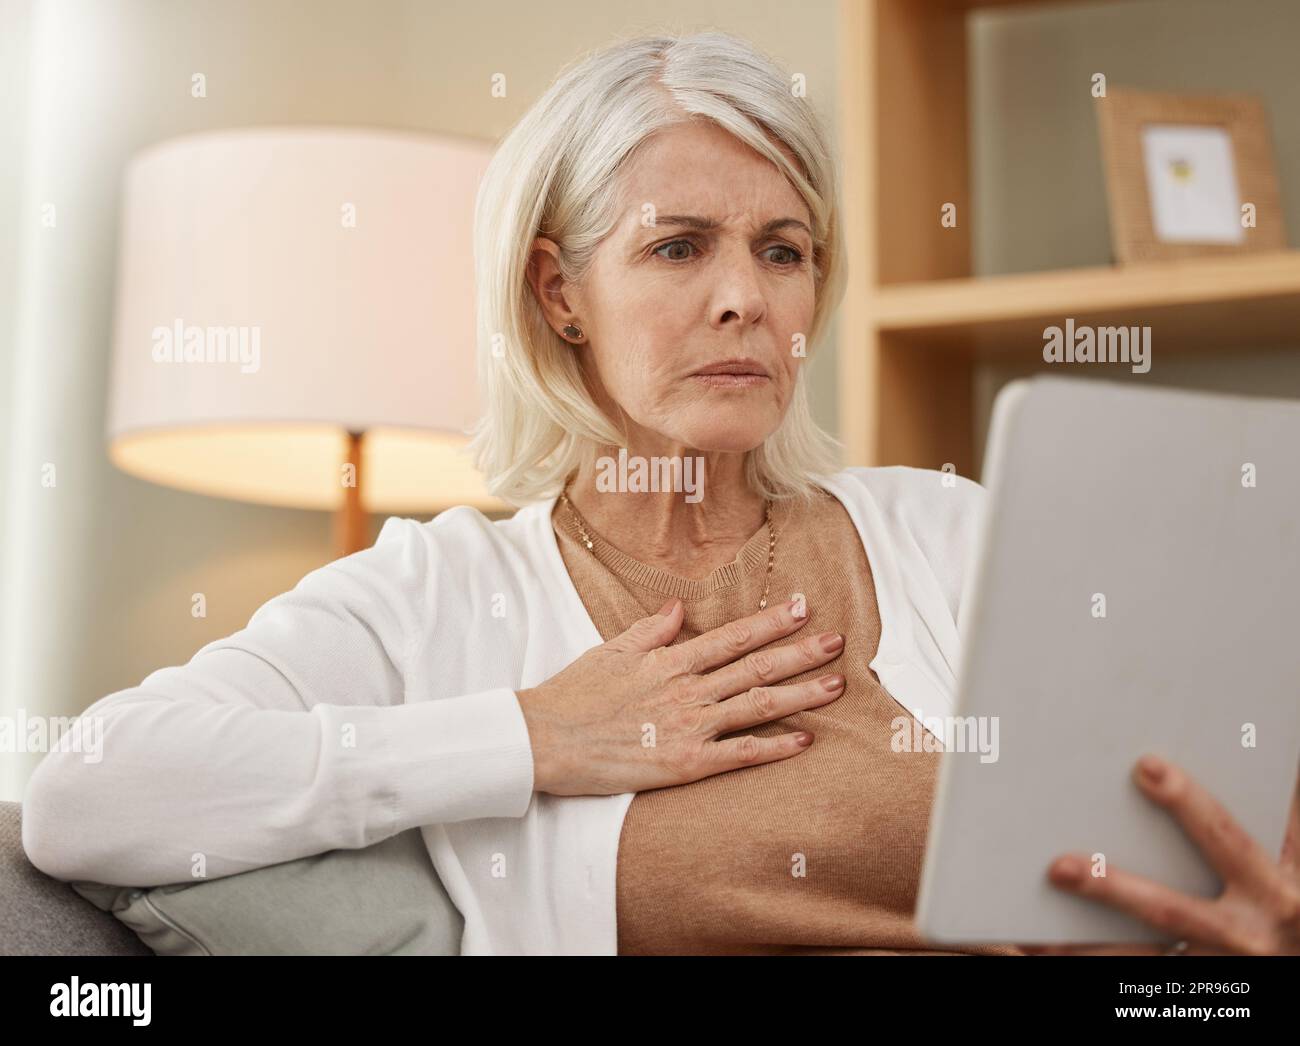 Forse dovrei fare un doppio controllo con il mio medico: Una donna matura che usa un tablet digitale e che guarda preoccupata a casa. Foto Stock